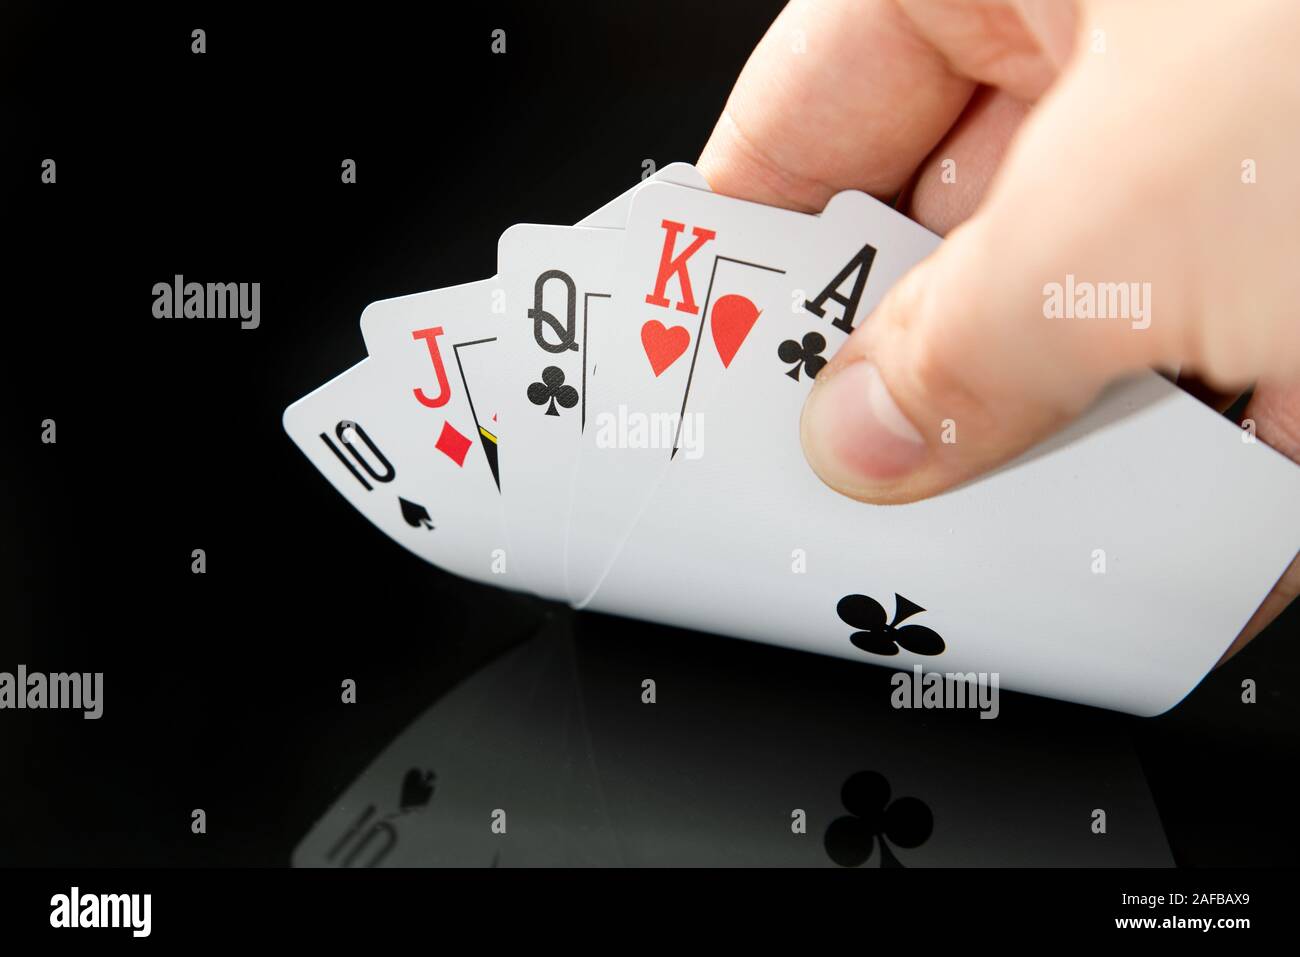 Man holding cartes sur table noire avec réflexion. Jouer au poker, le jeu de casino en concept. Banque D'Images